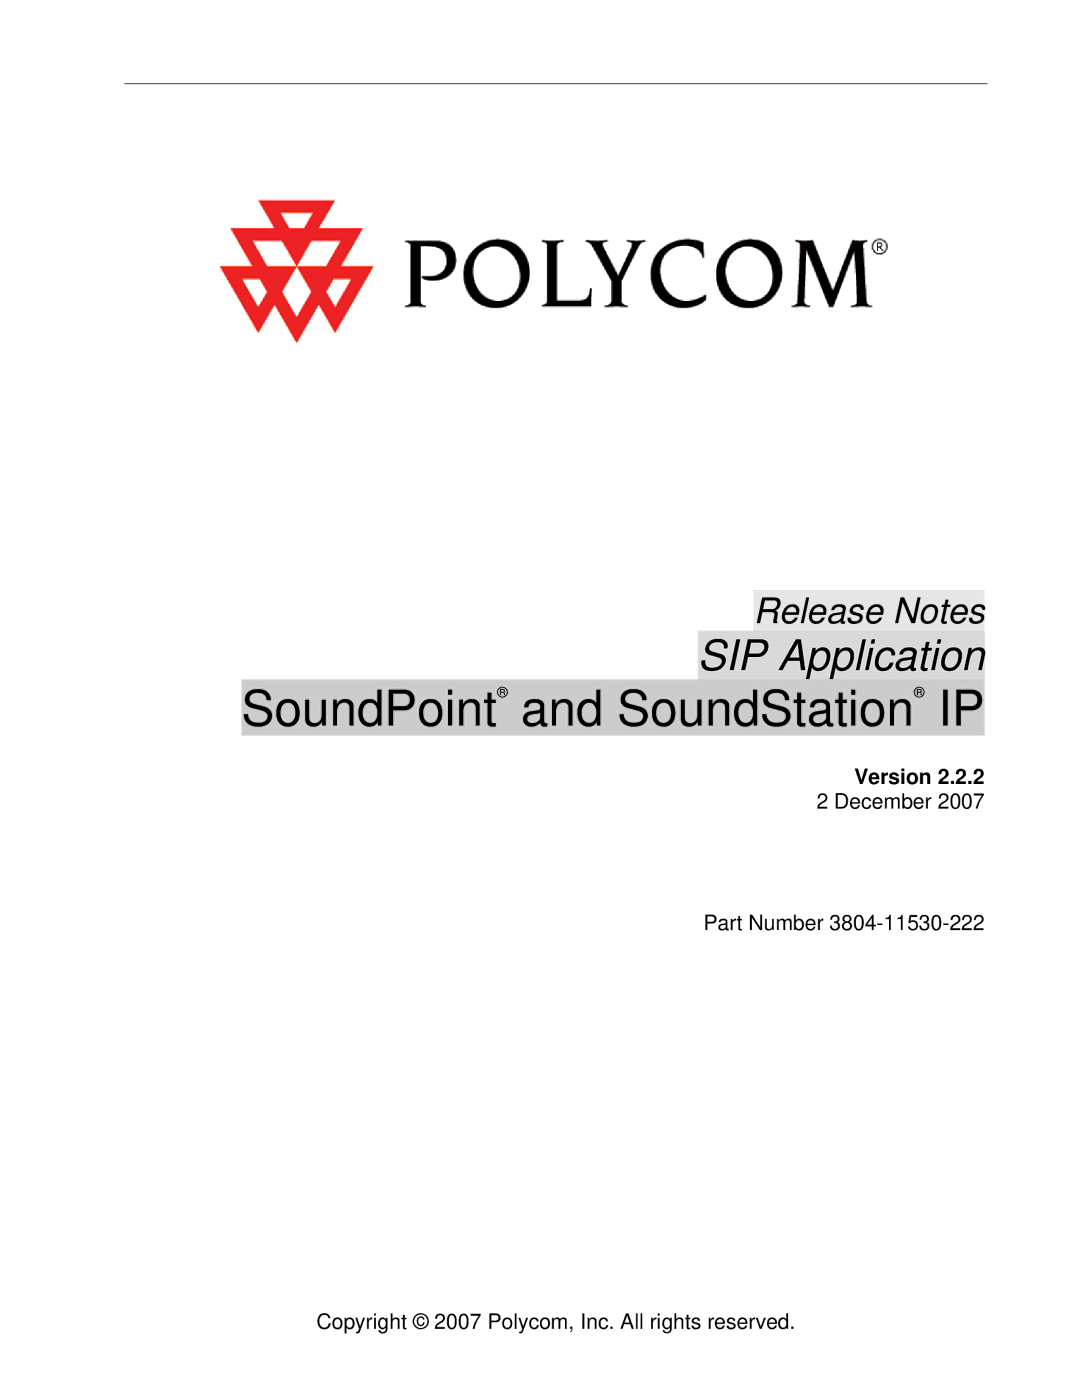 Polycom 3804-11530-222 manual SoundPoint and SoundStation IP, Version 